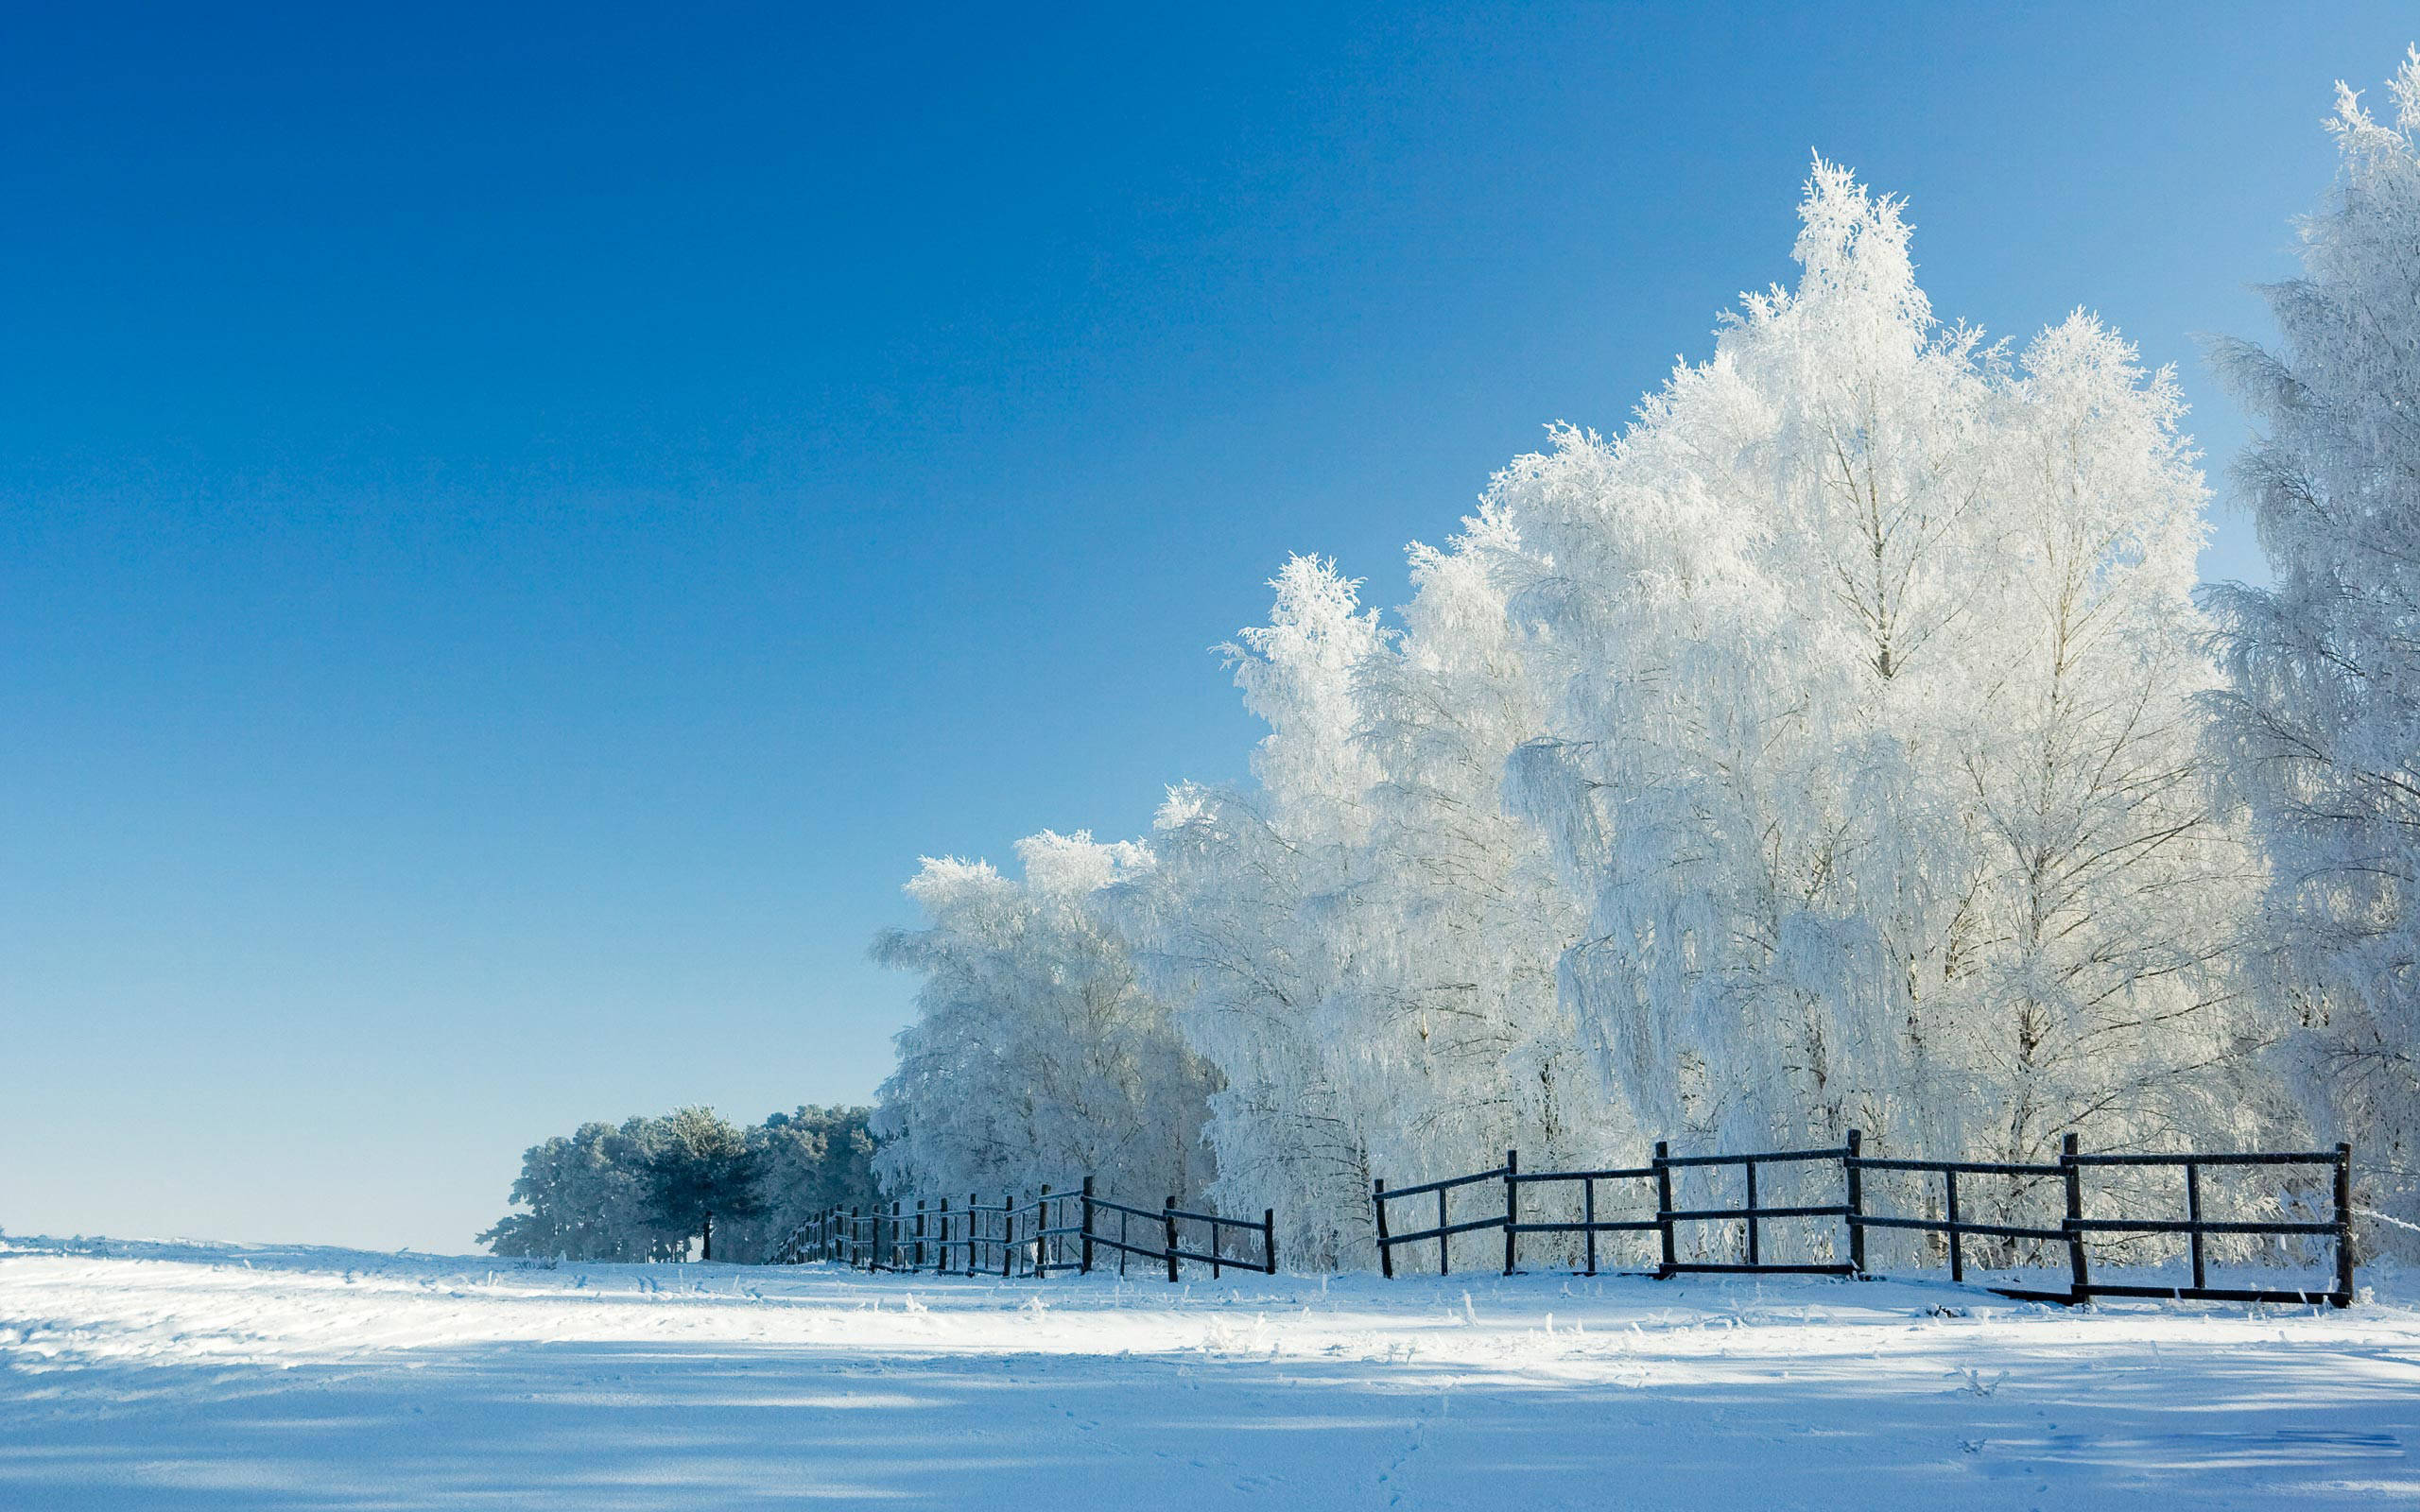 Вид зимы. Зимняя природа. Зима пейзаж. Снежный пейзаж. Зима снег.